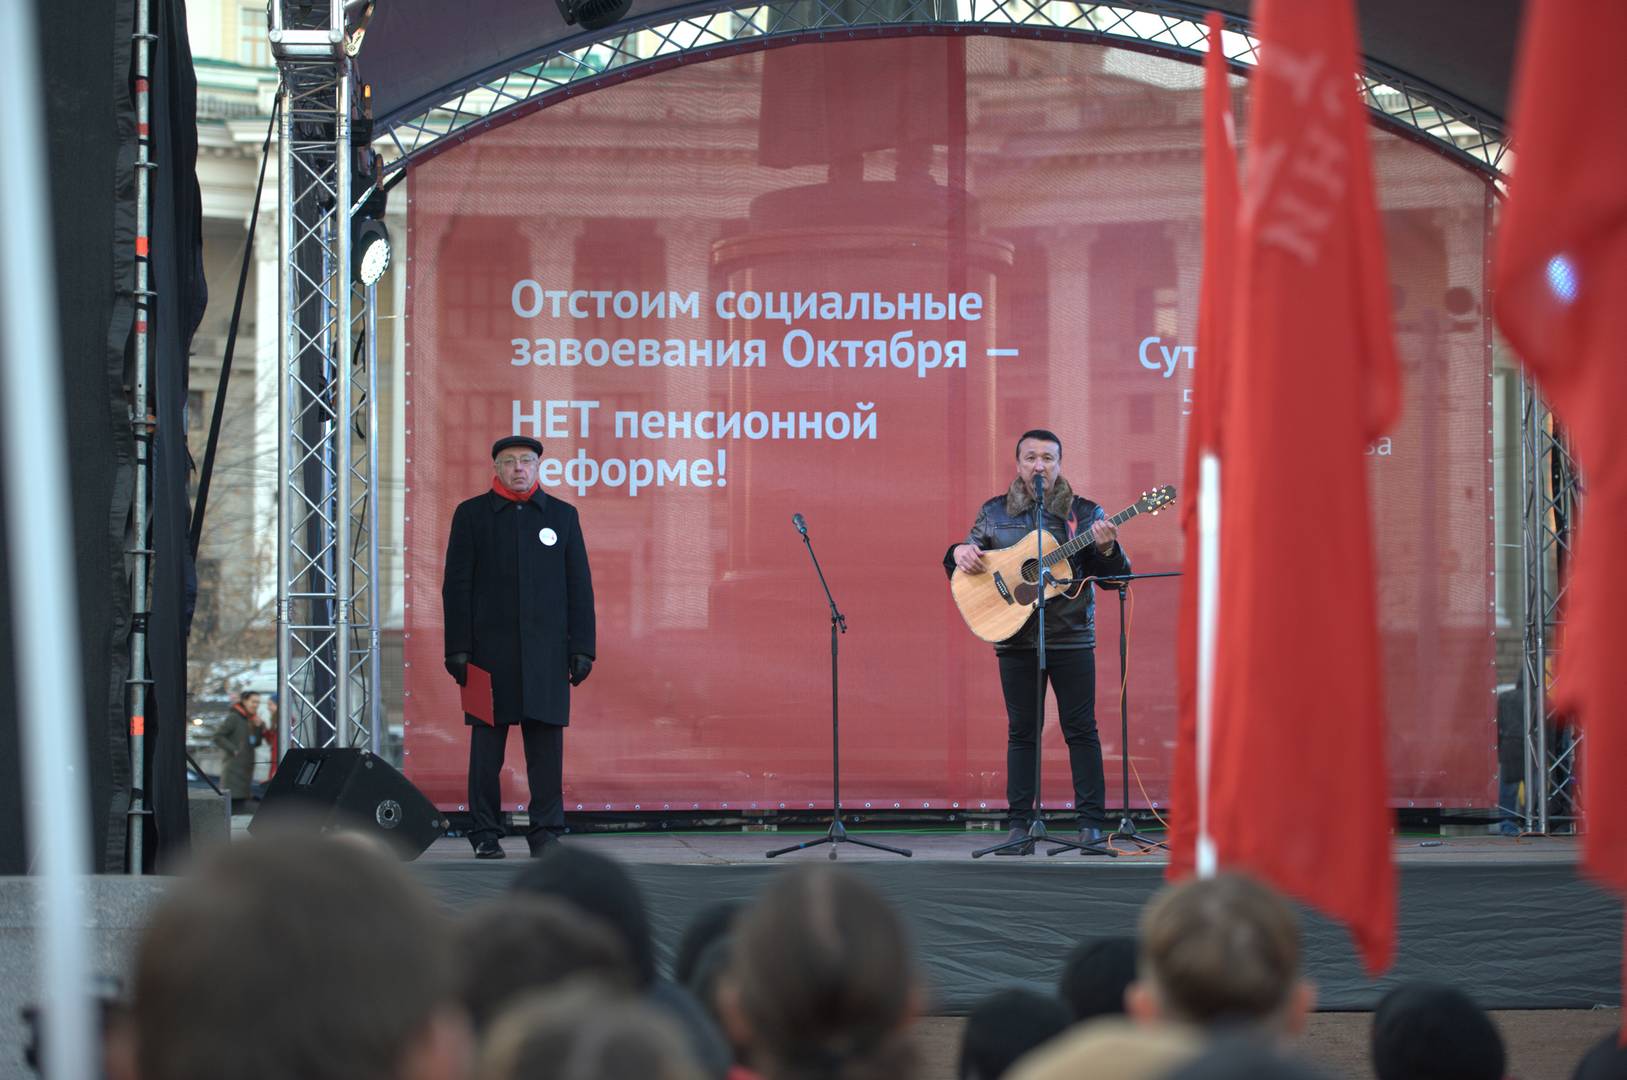 Ильяс Аутов выступает на митинге «Сути времени» в Москве, 5 ноября 2018 г.